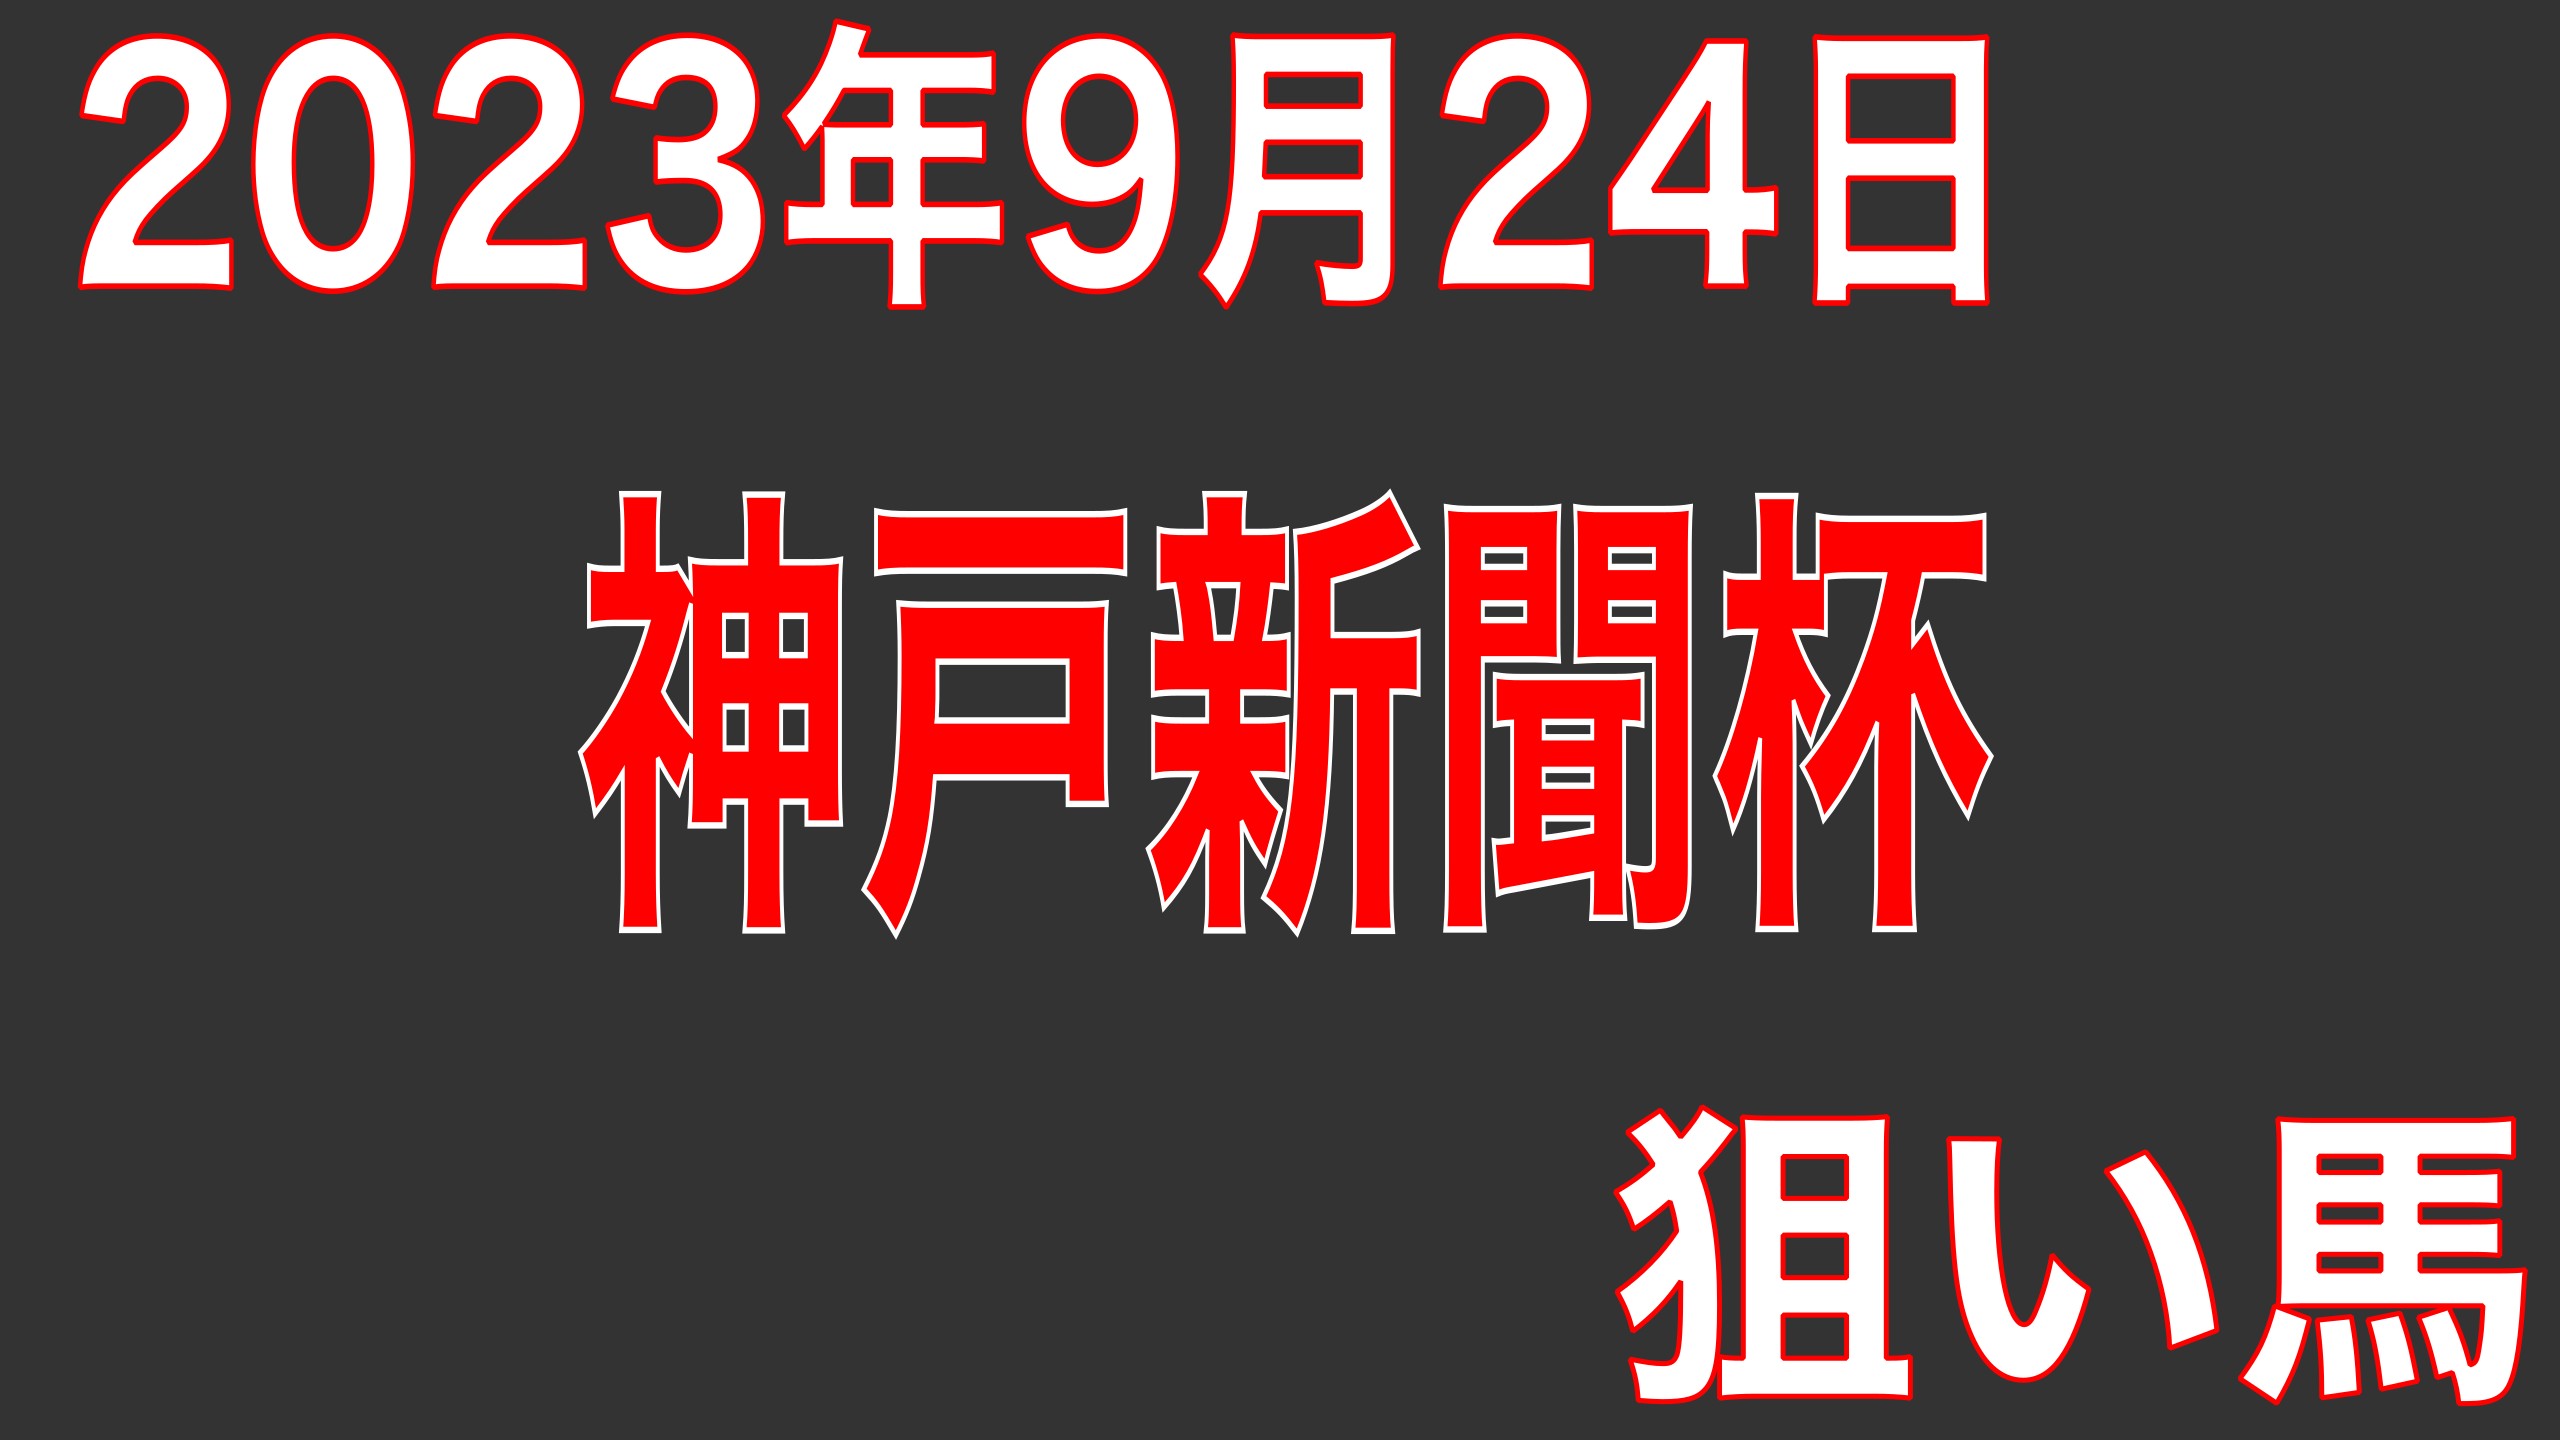 2023年9月24日(日)神戸新聞杯(G2) 狙い馬考察